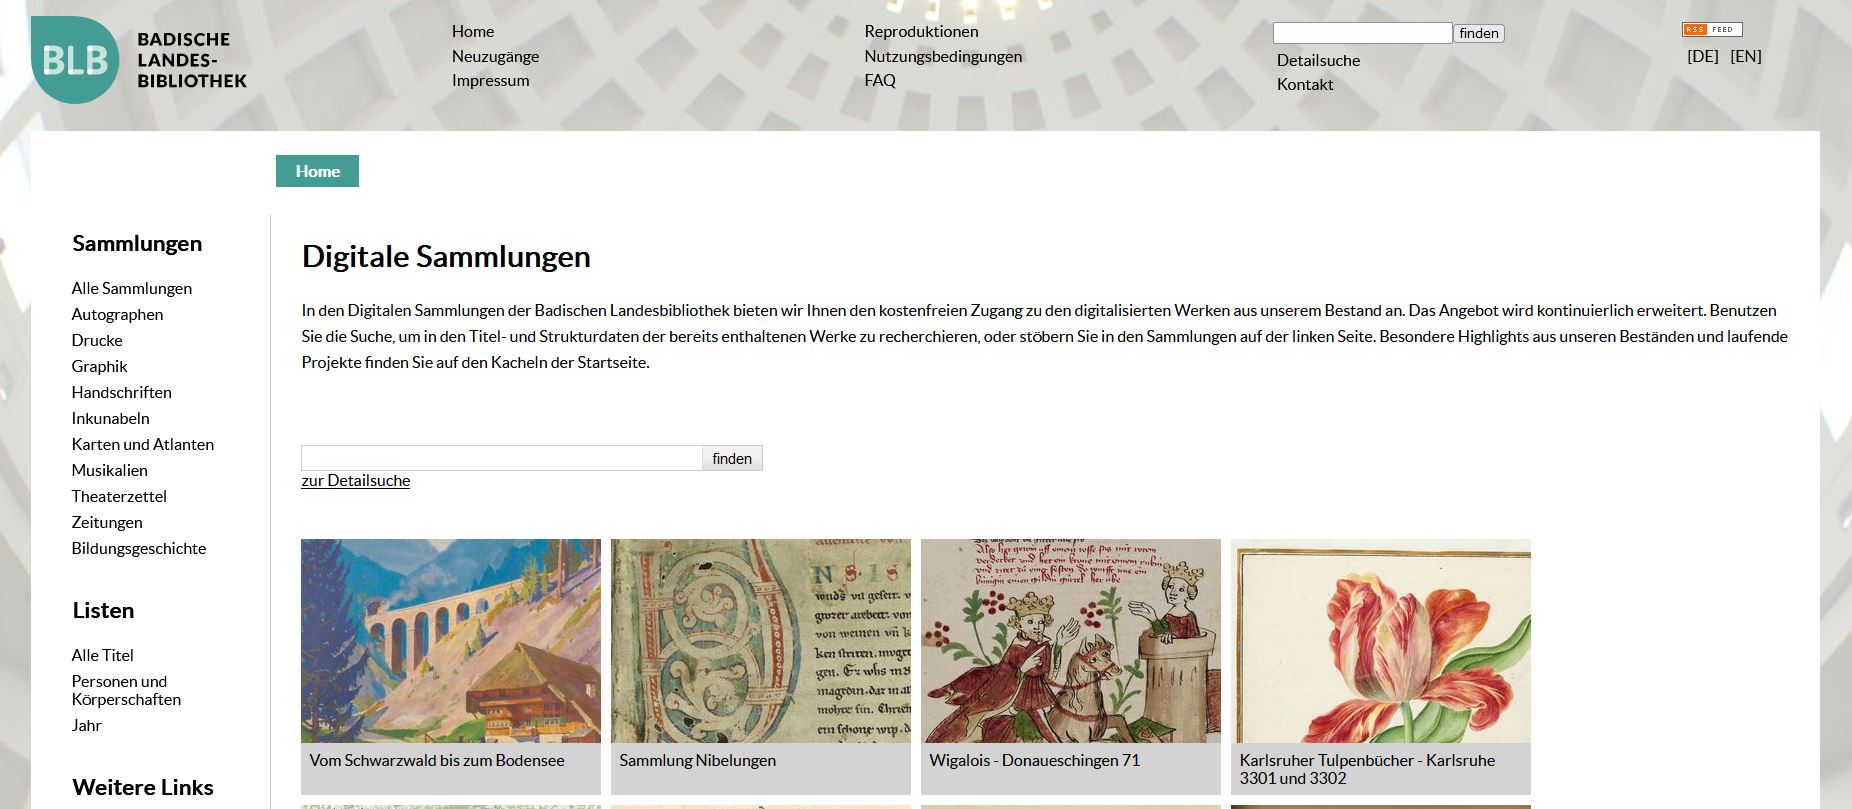 Zu sehen ist ein Bildschirmfoto der Digitalen Sammlungen der Badischen Landesbibliothek. 